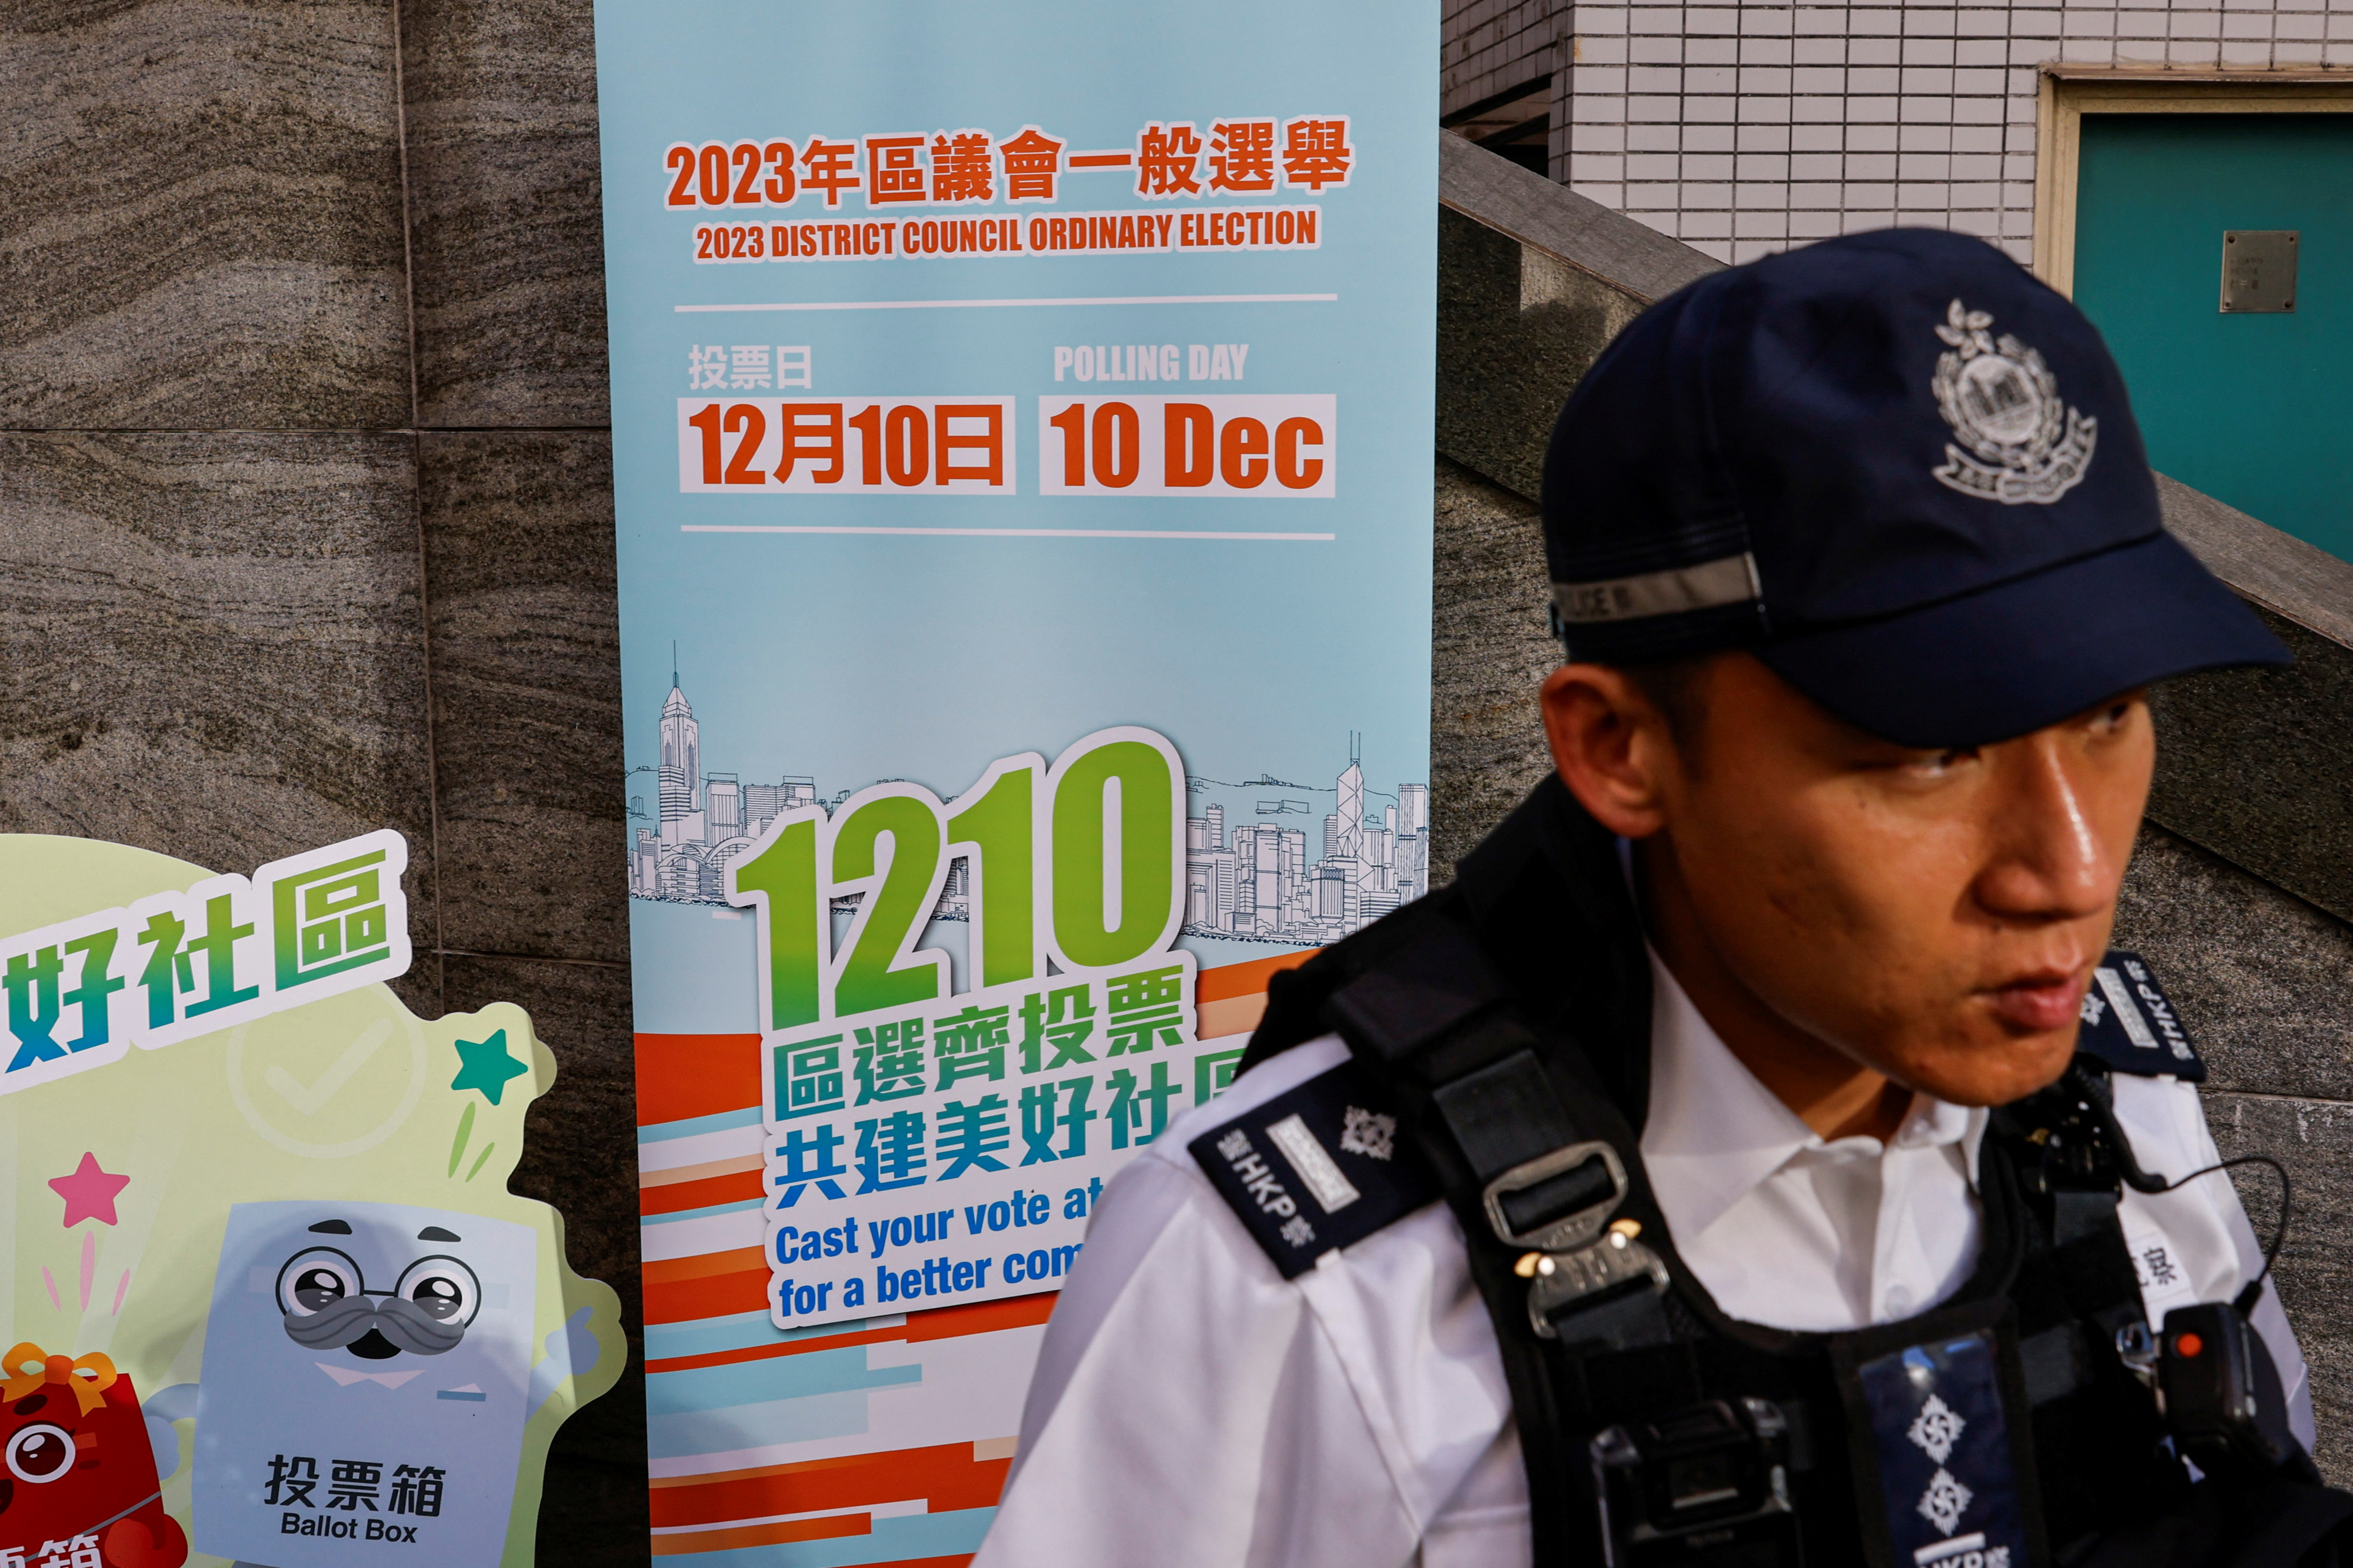 홍콩 경찰이 10일 치러진 구의회 선거에서 투표소를 엄격하게 통제하고 있다.  홍콩 로이터 연합뉴스